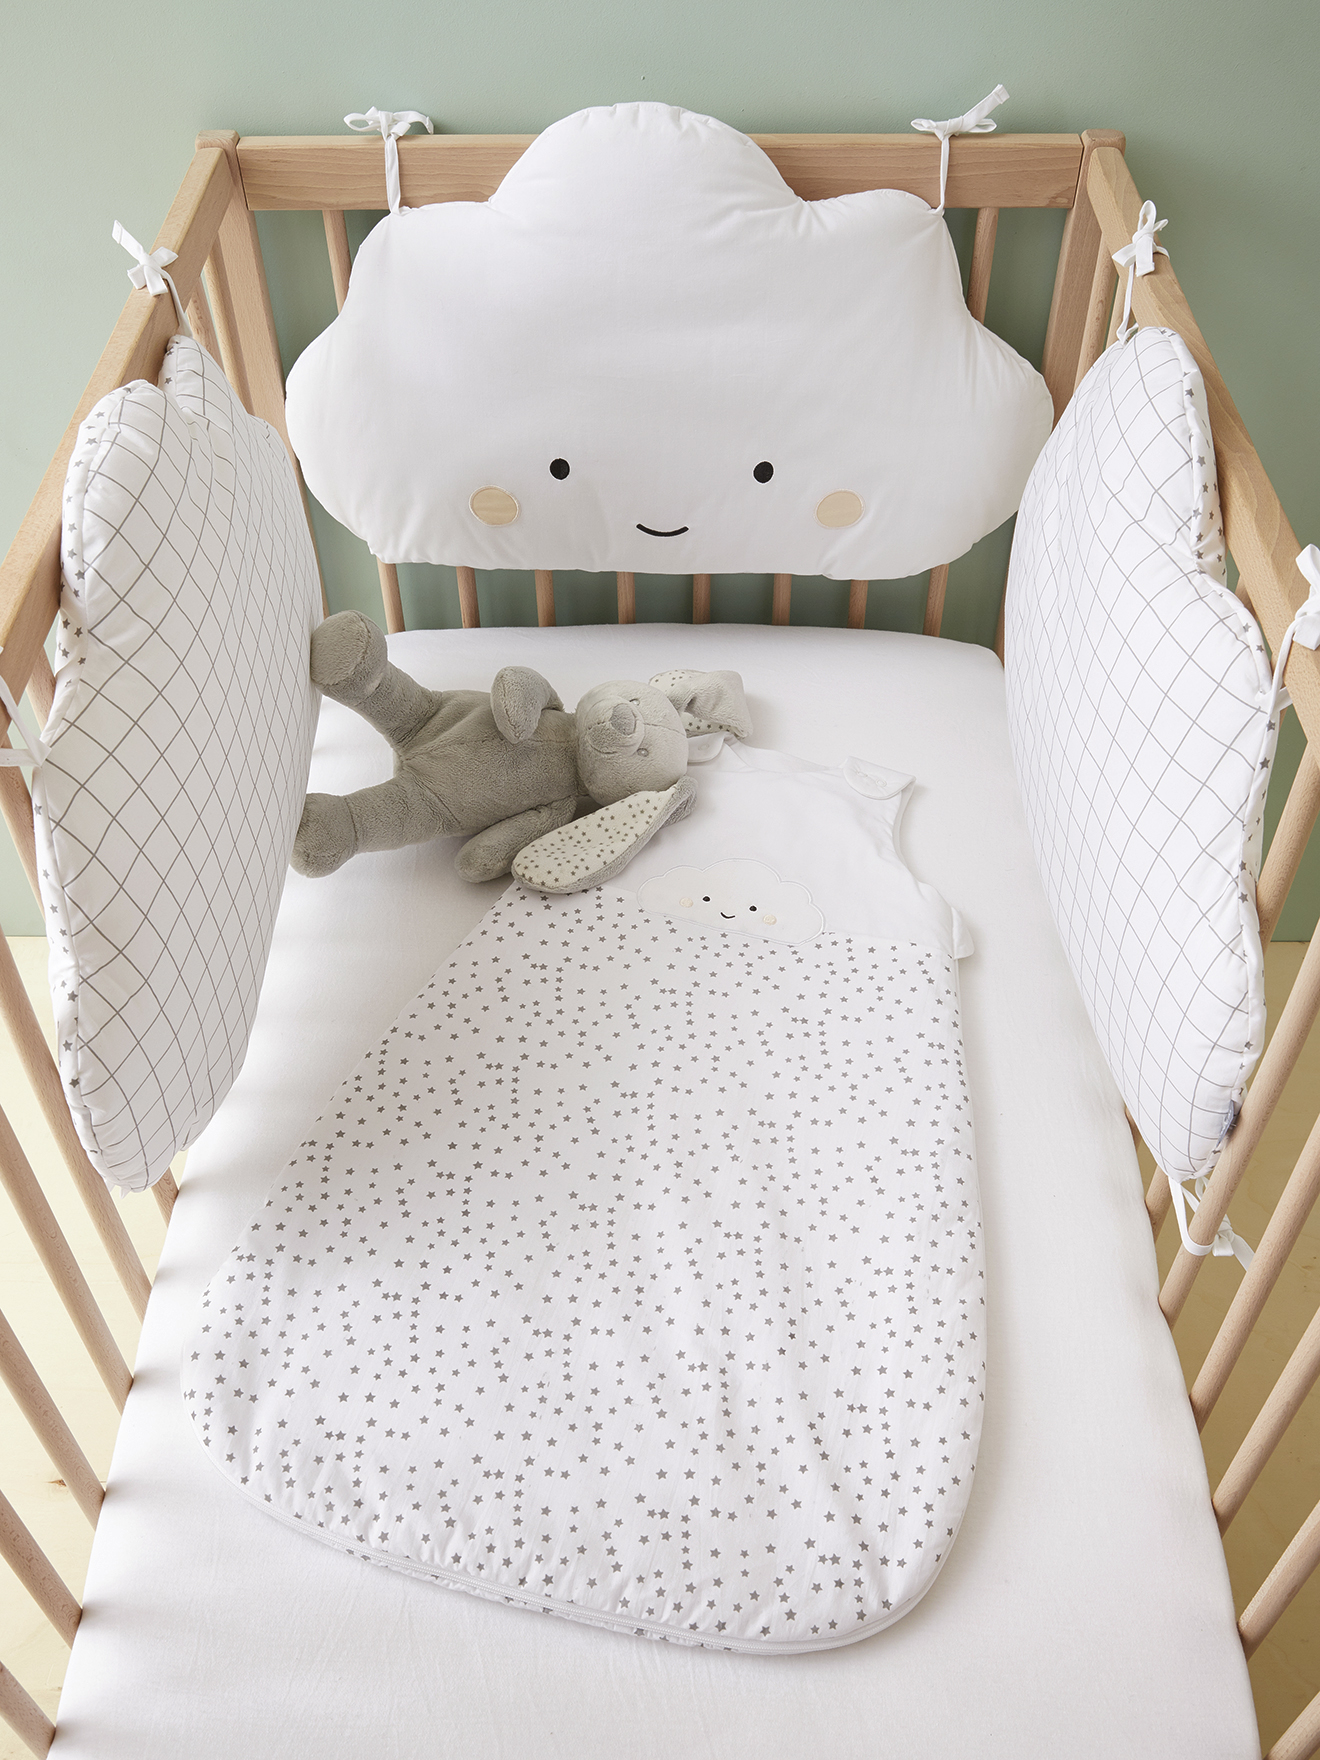 6Stk Baby Bettwäsche Nestchen Bettset für Babybett Bettumrandung Kissen Bett HH 